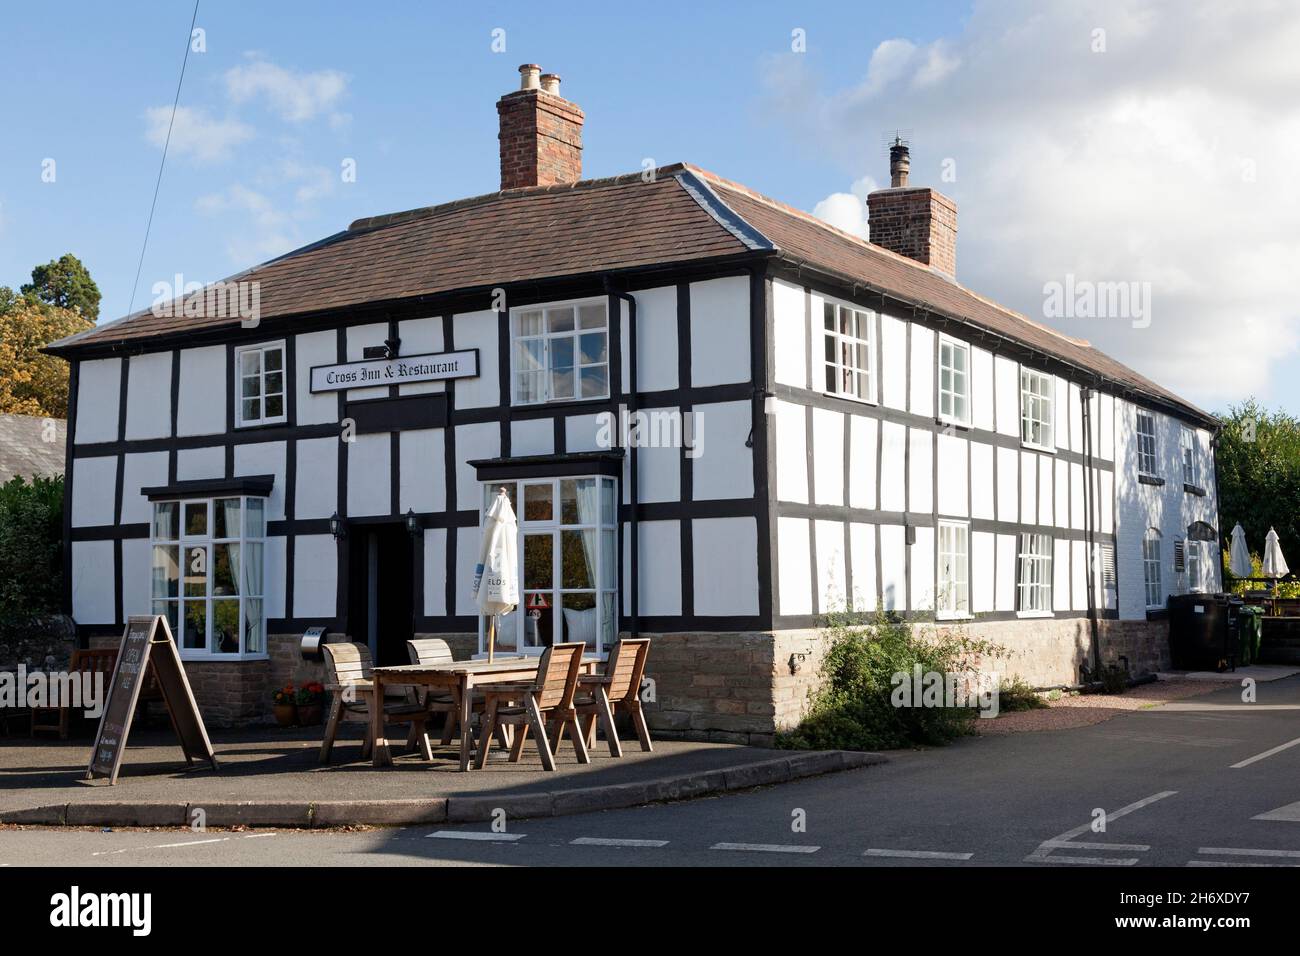 The Cross Inn and Restaurant, Eardisland, Herefordshire Stockfoto